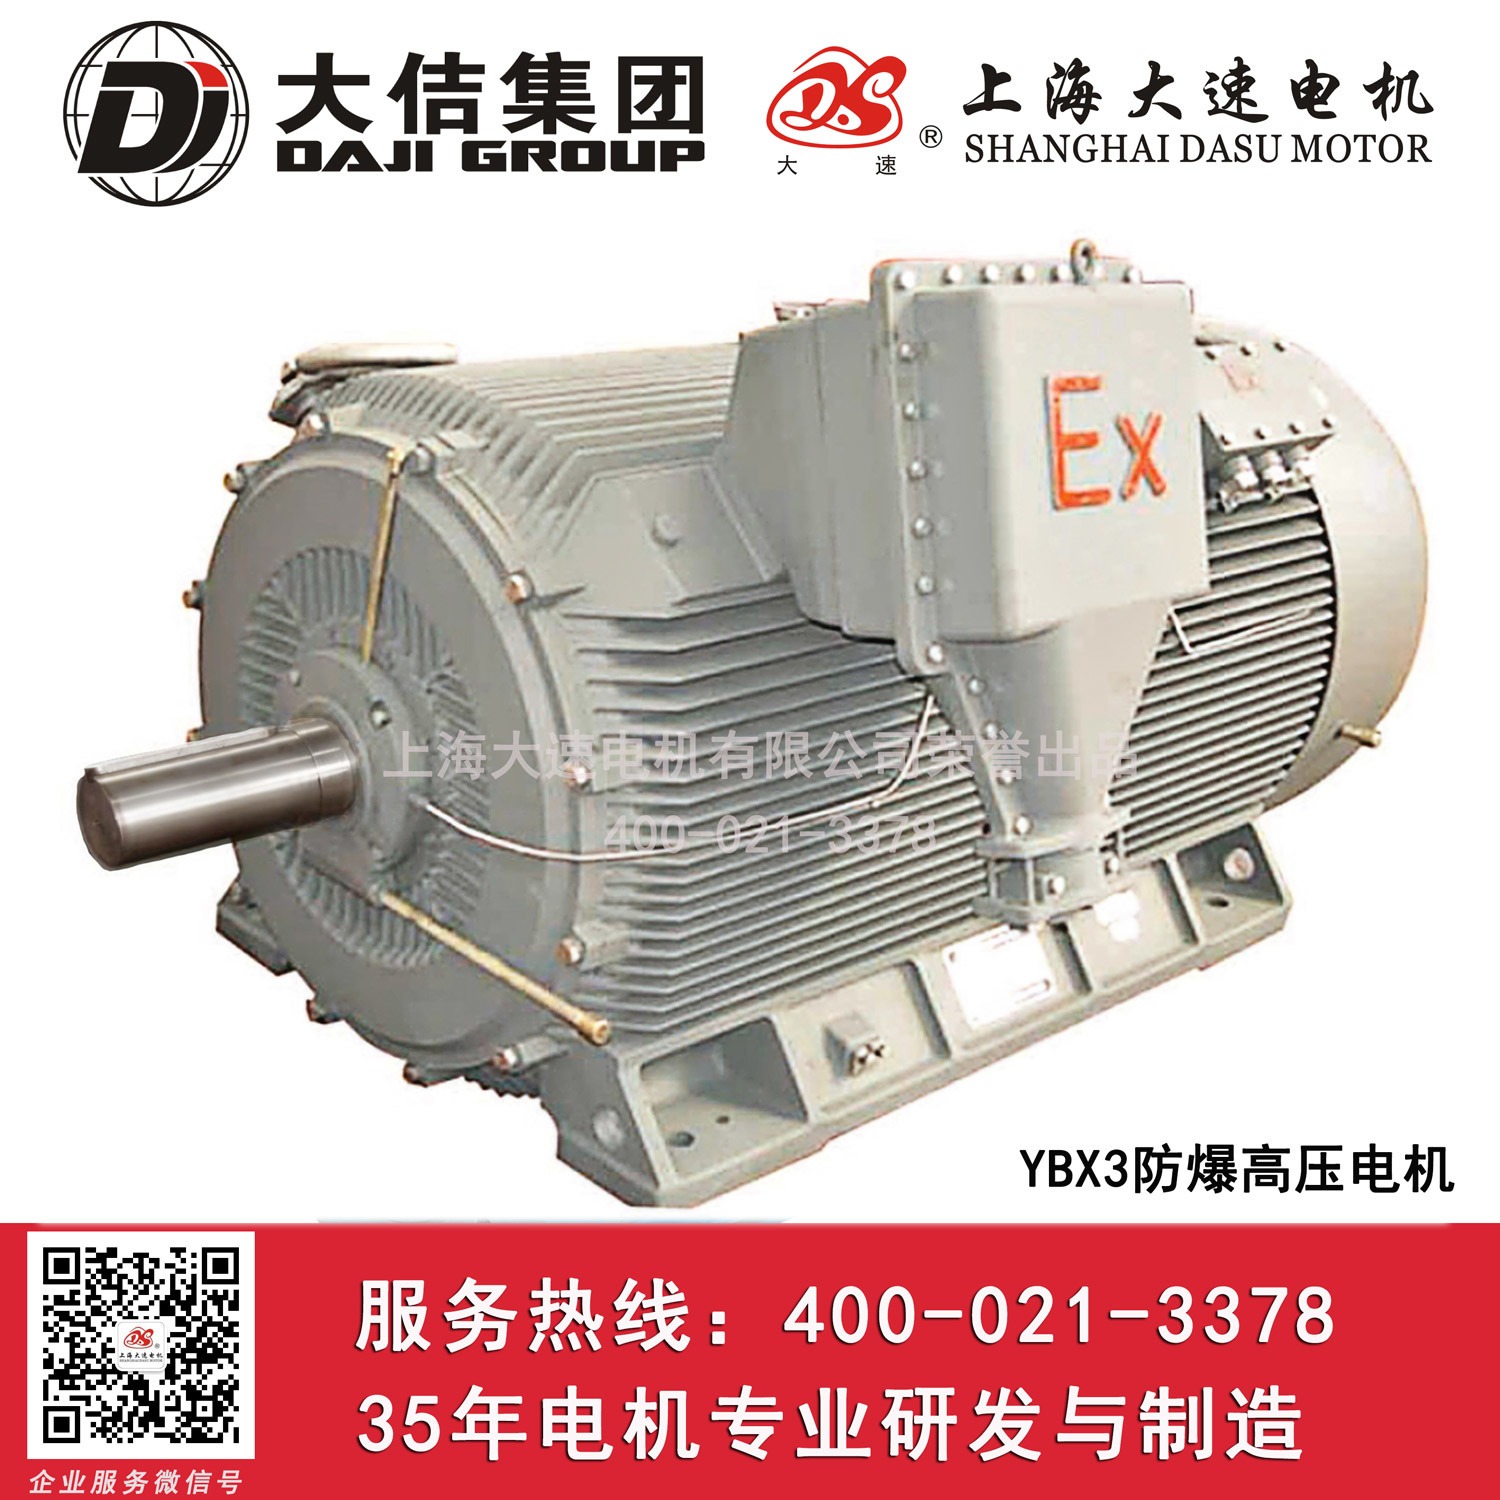 上海大速电机10KV6KVYBX3防爆高压电动机防爆变频电机高压电机工家直销图片